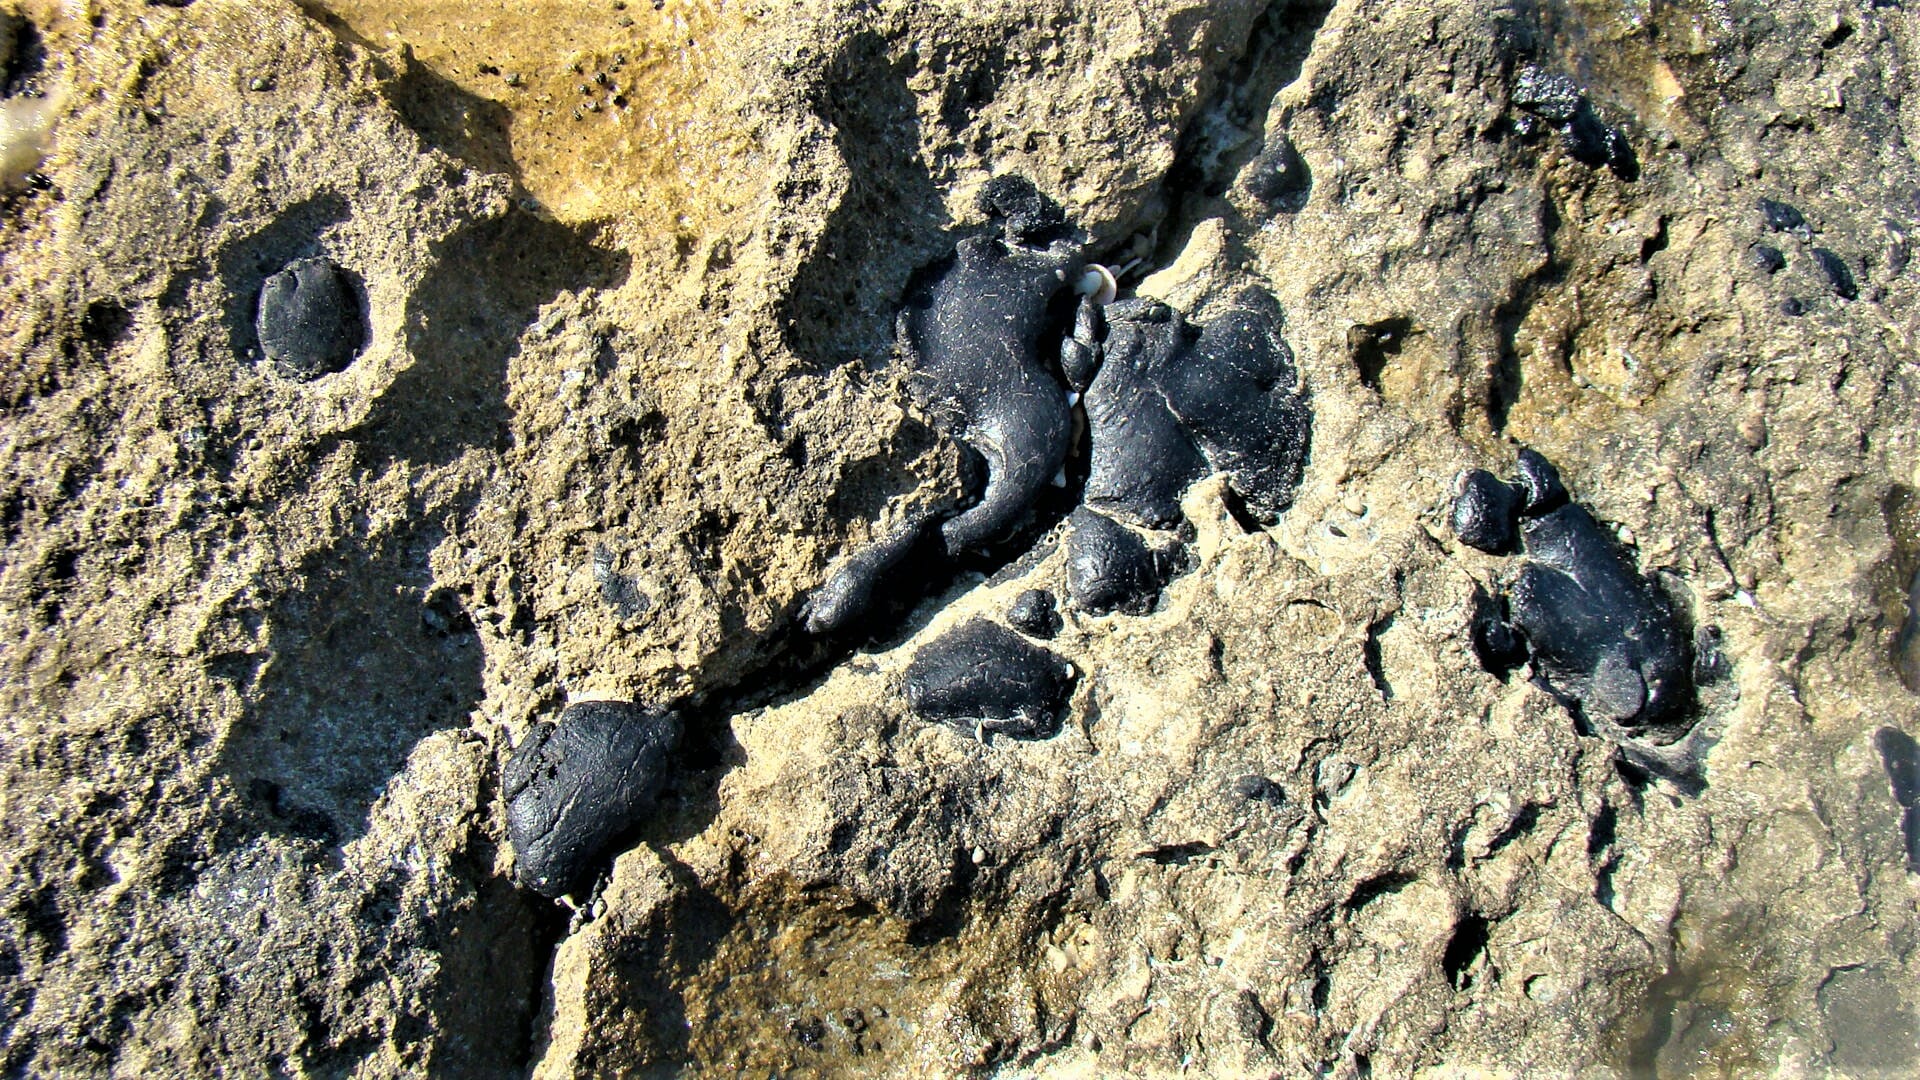 זפת שקועה באבני החוף באזור הכרית בחוף תל-ברוך, צילום: ד"ר ענת אביטל